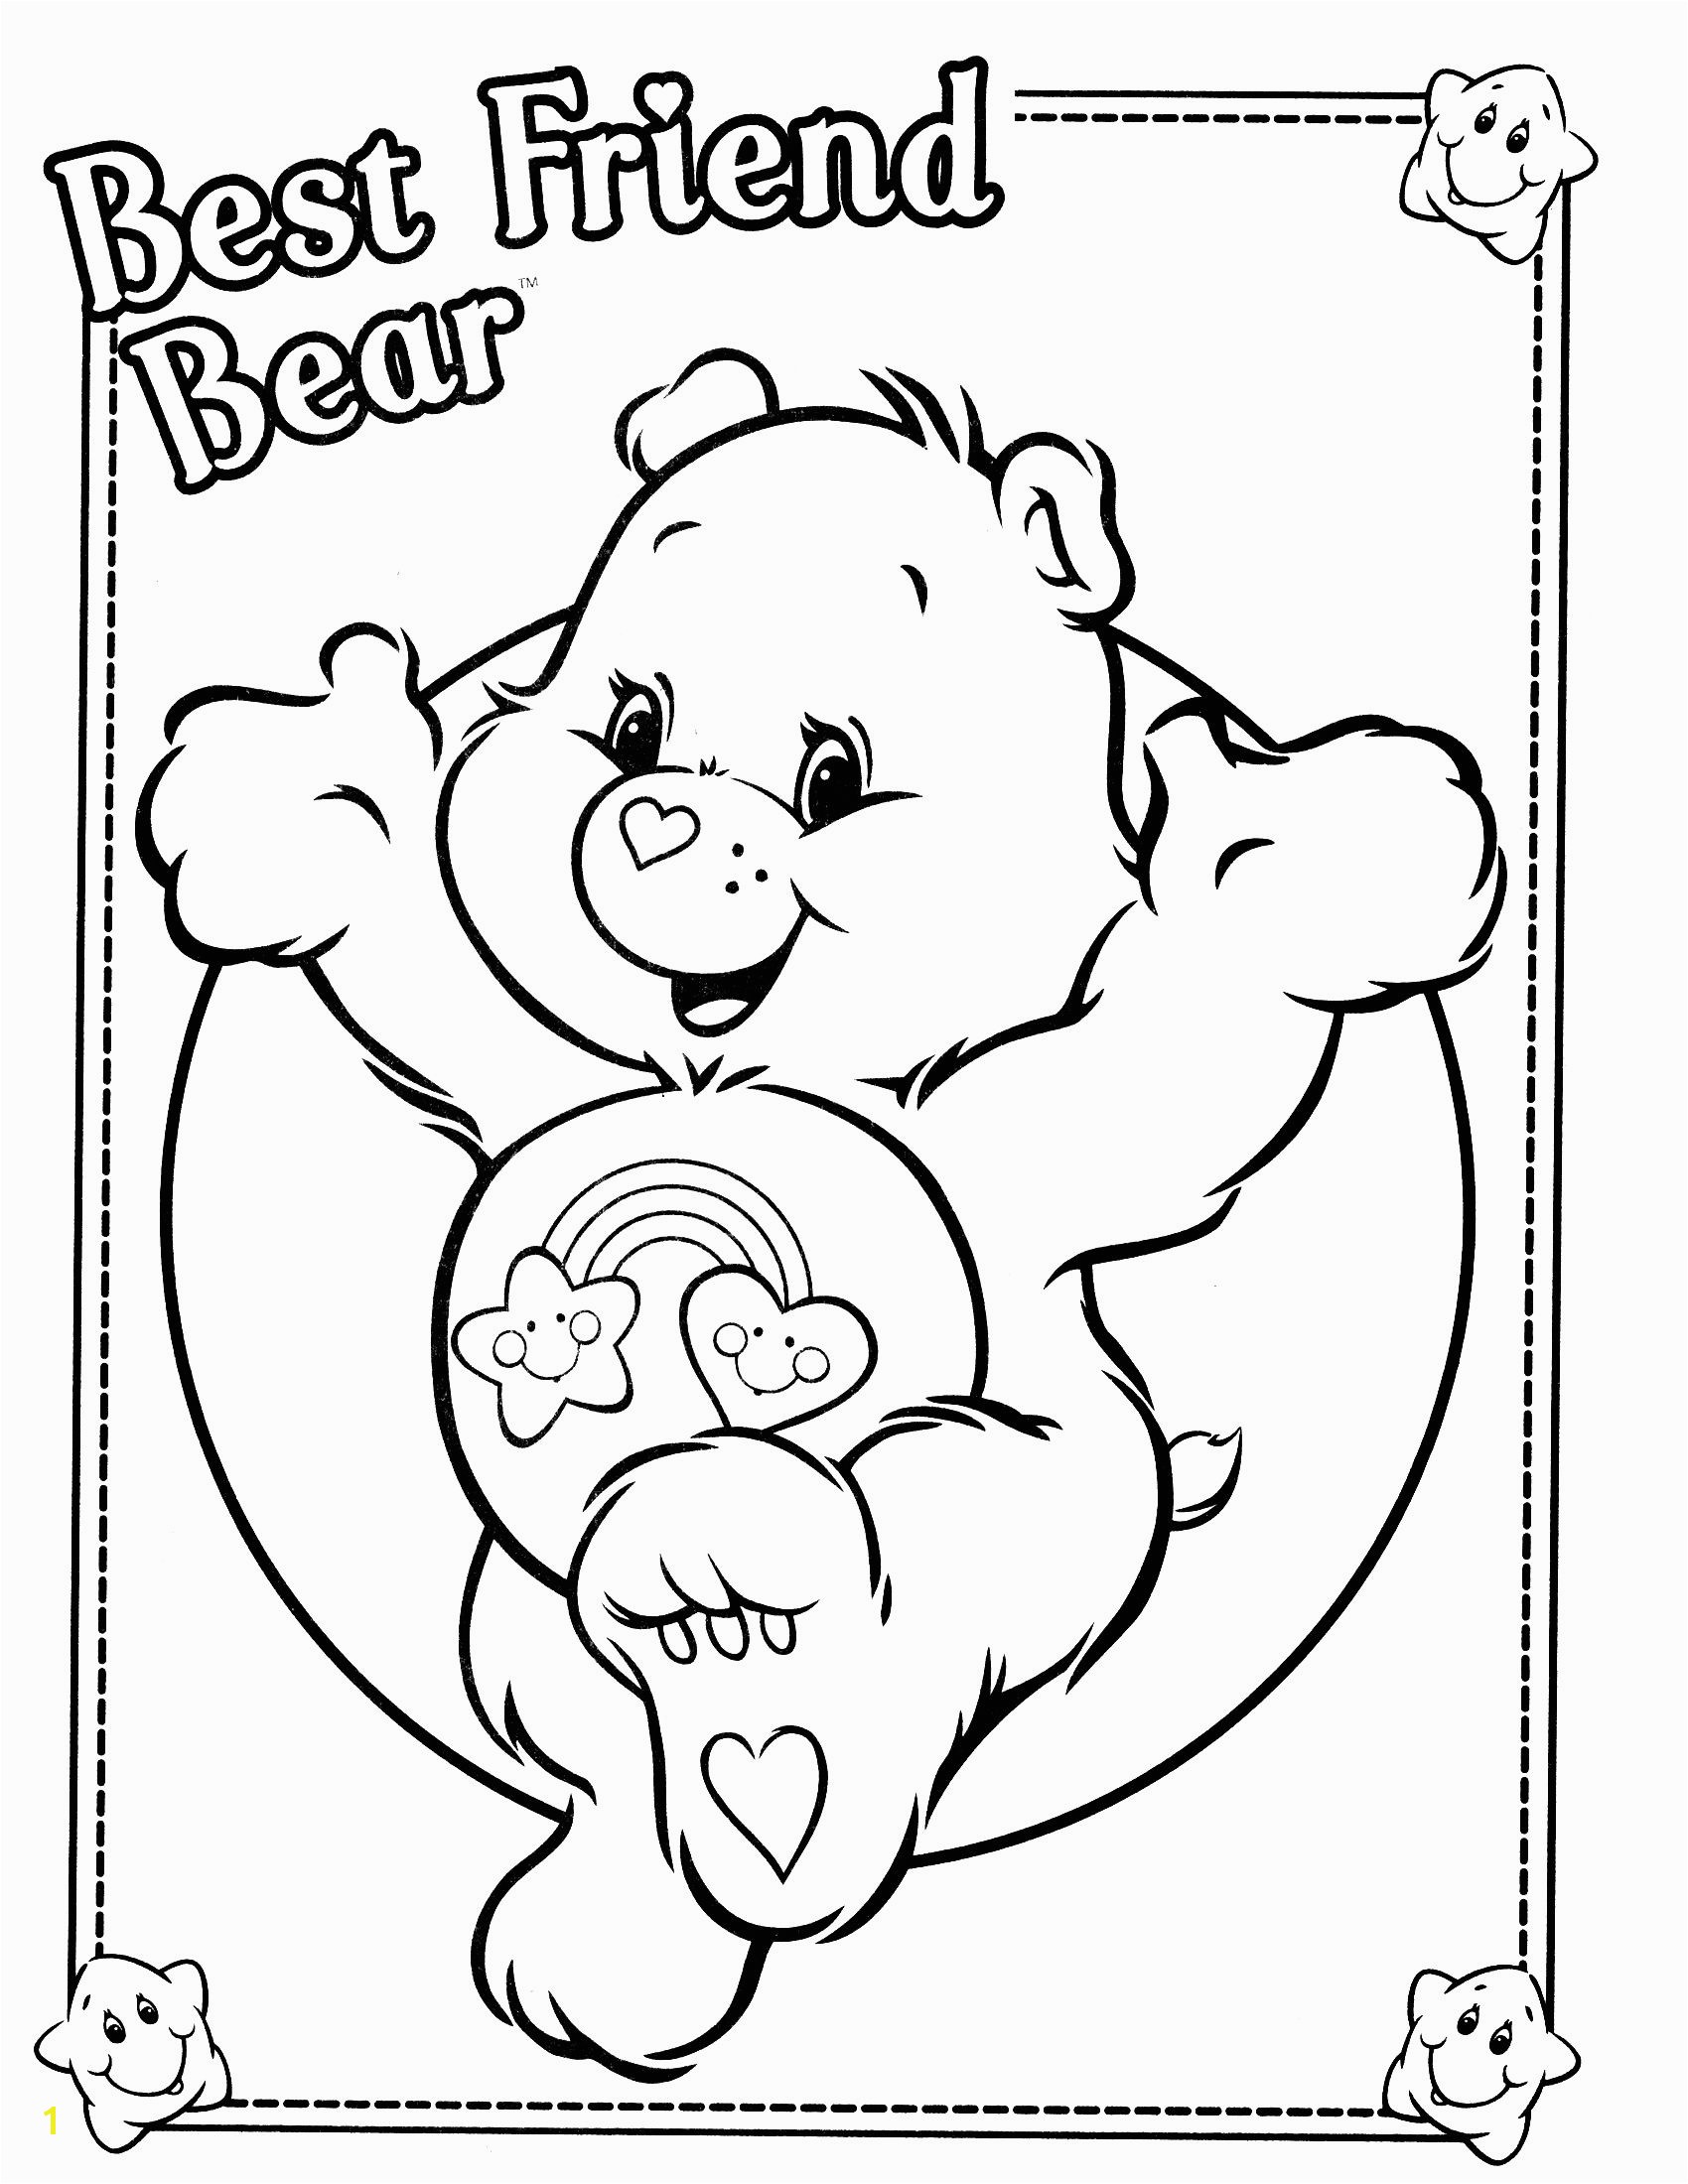 Best Friend Care Bear Coloring Pages Unique Carebear Coloring Sheet Design